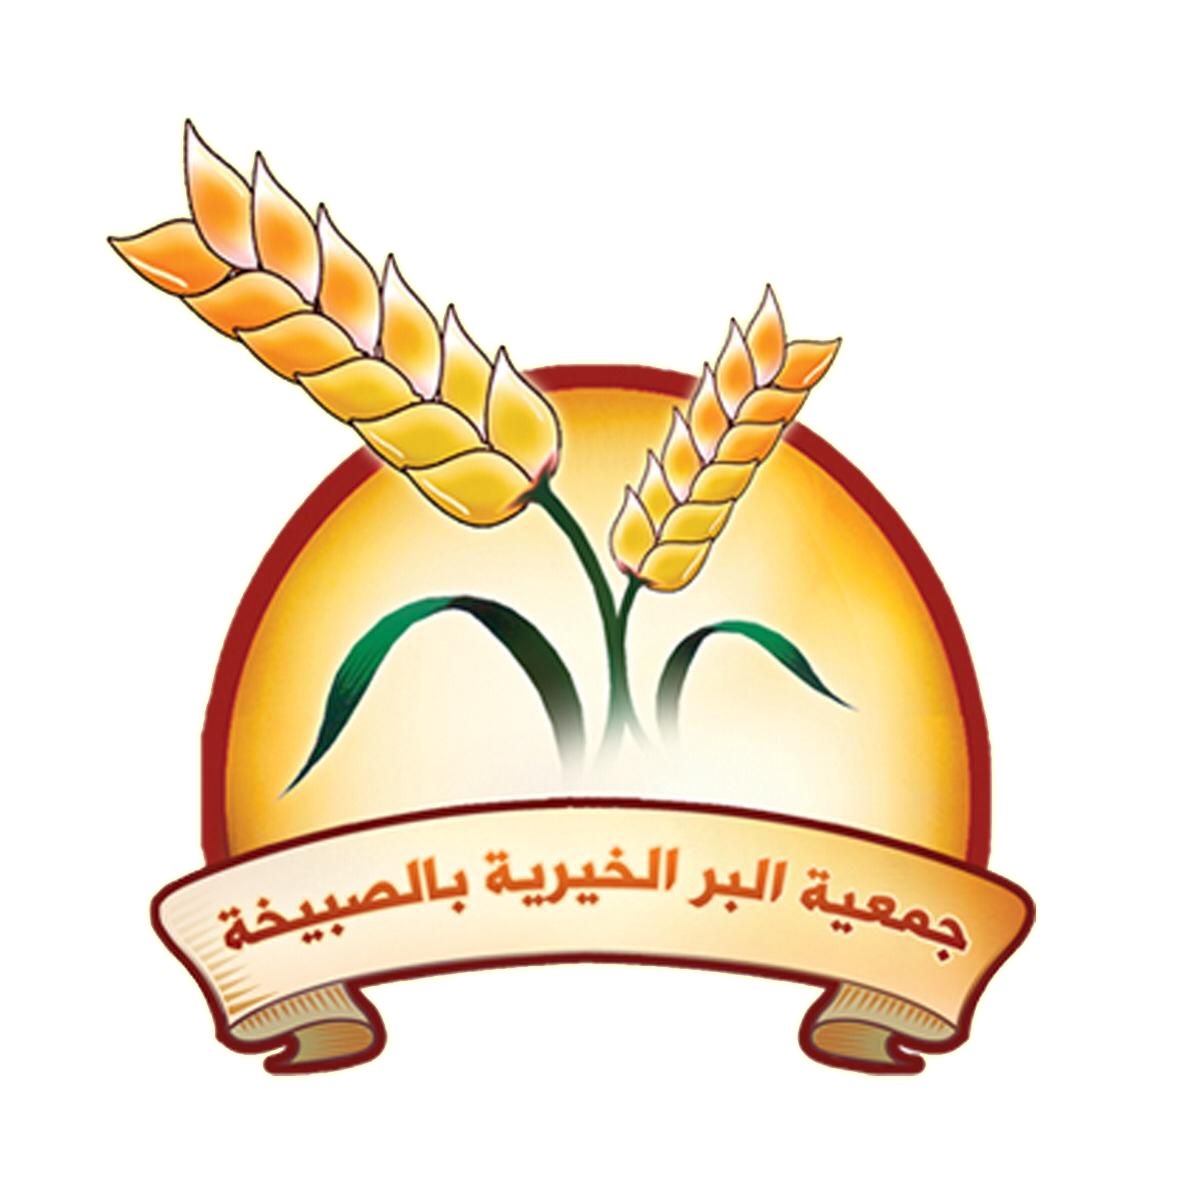 شعار الجمعية الرسمي